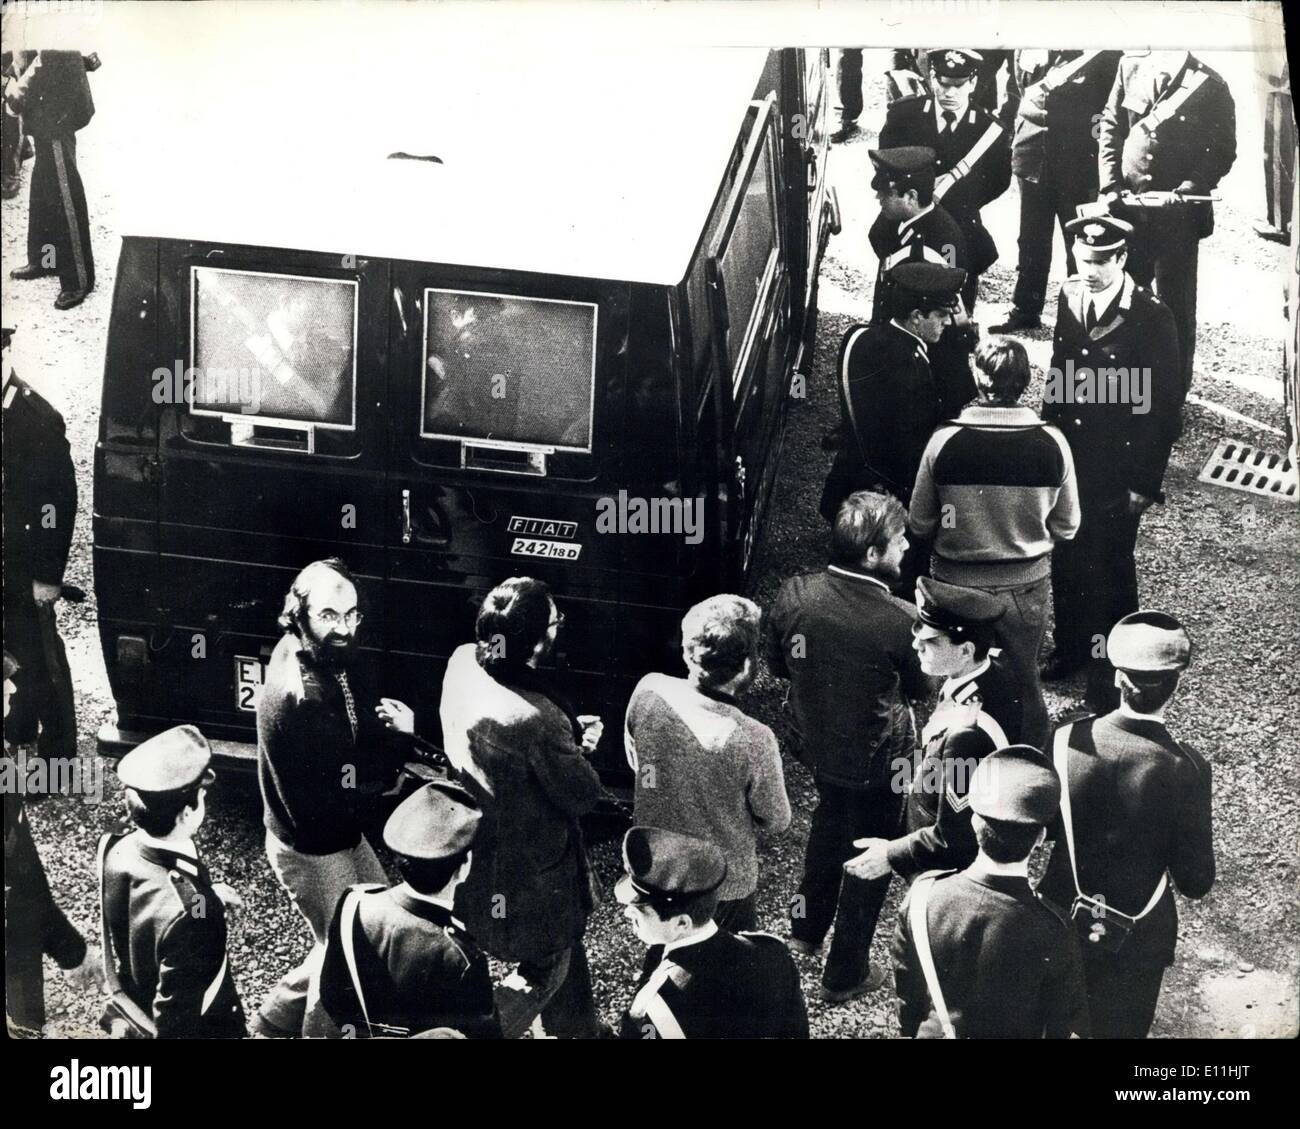 Mar 16, 1978 - Il processo delle Brigate Rosse: le prove delle Brigate Rosse ha iniziato in Italia con la tragedia, il giorno del giudizio,m una polizia marchal, Rosaqrio Berardi, 51, padre di cinque figli, è stato trovato ucciso. I motivi per l'uccisione era che le Brigate Rosse volevano le autorità di rinviare il processo per la terza volta. La foto mostra le Brigate Rosse sono confinate dai Caribinieri (Esercito Ttalian Polizia di Stato) in furgoni di polizia dopo il primo giorno del periodo di prova la settimana scorsa. Foto Stock